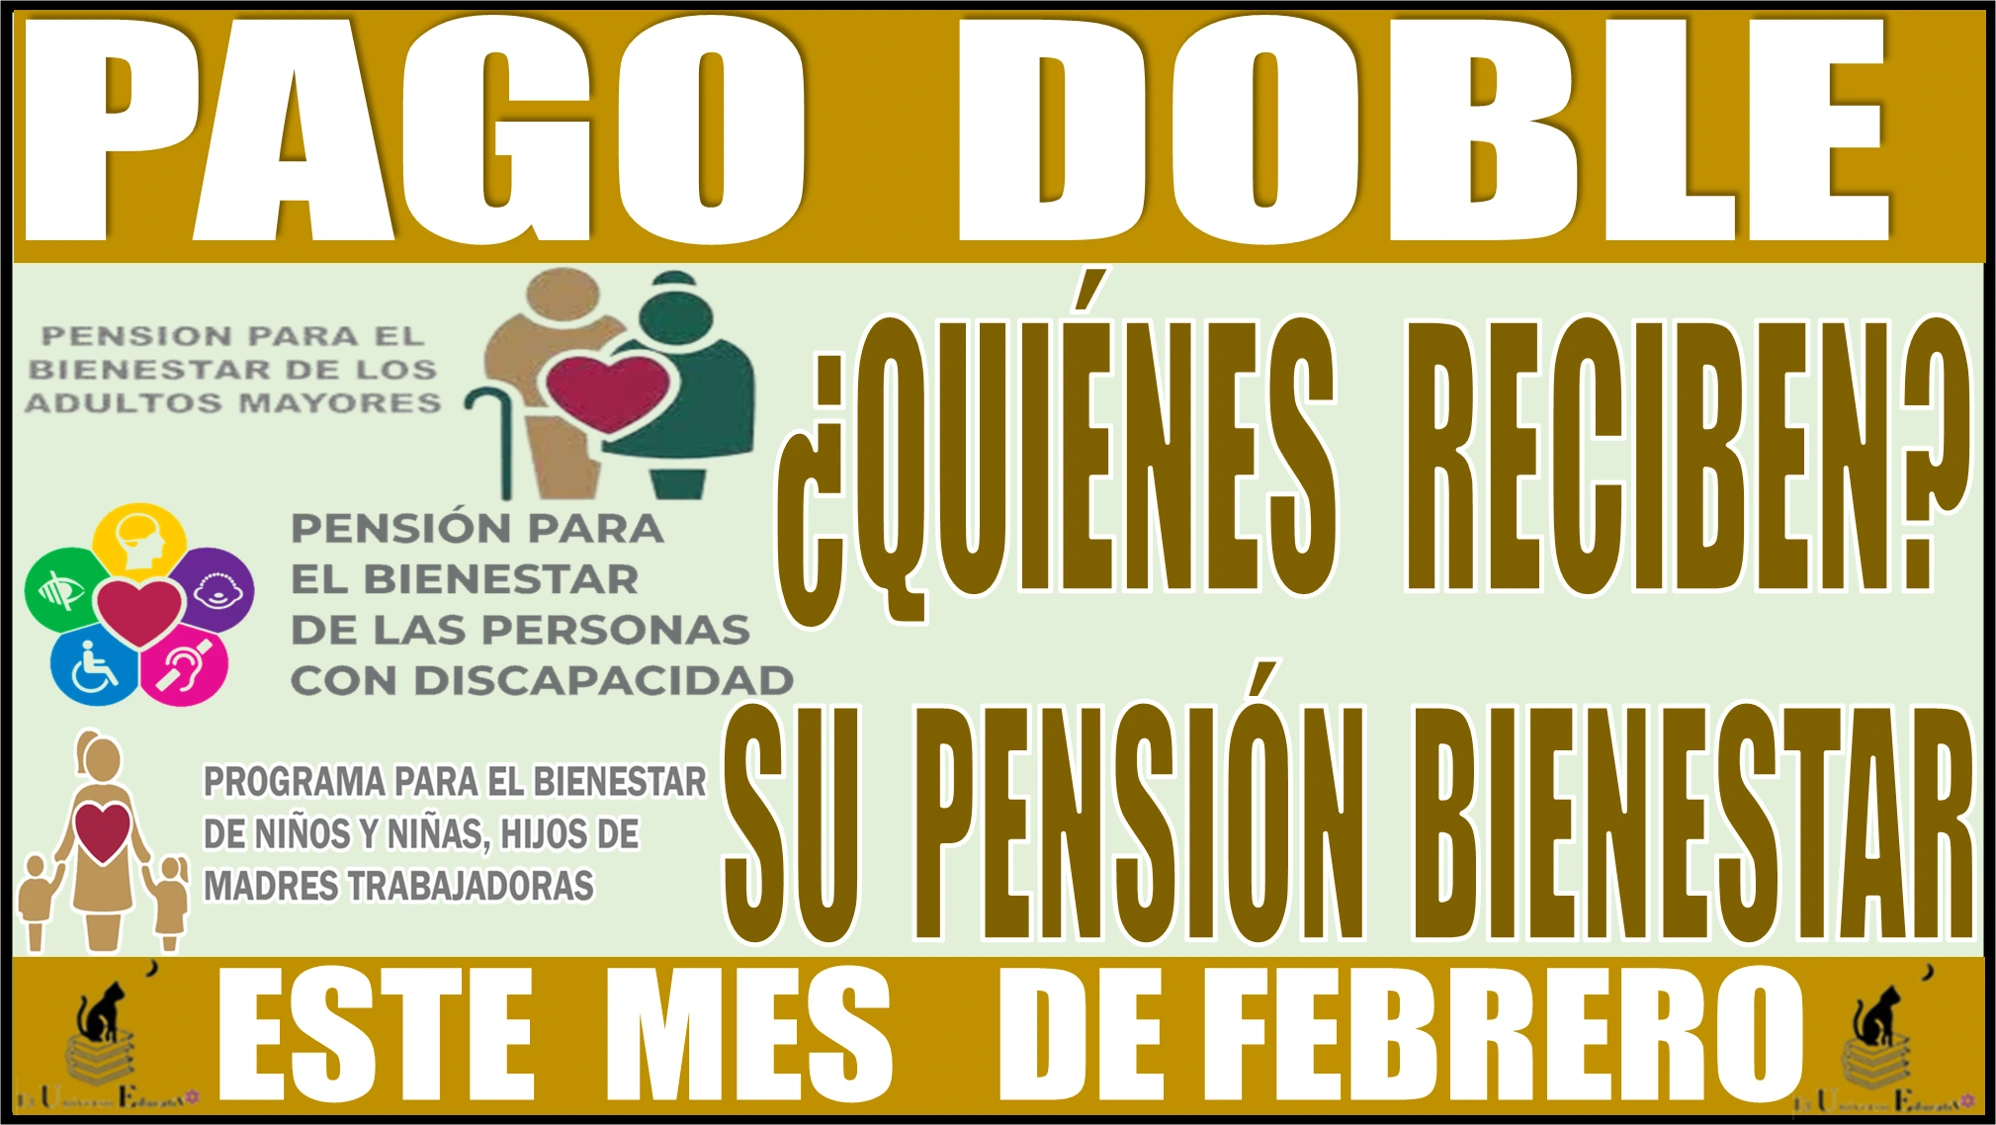 🤑👴🏽👵🏻💸 PAGO DOBLE, ¿Quiénes reciben su pensión bienestar este mes de febrero? ASÍ LO HA DISPUESTO LA SECRETARÍA DE BIENESTAR 🤑👴🏽👵🏻💸